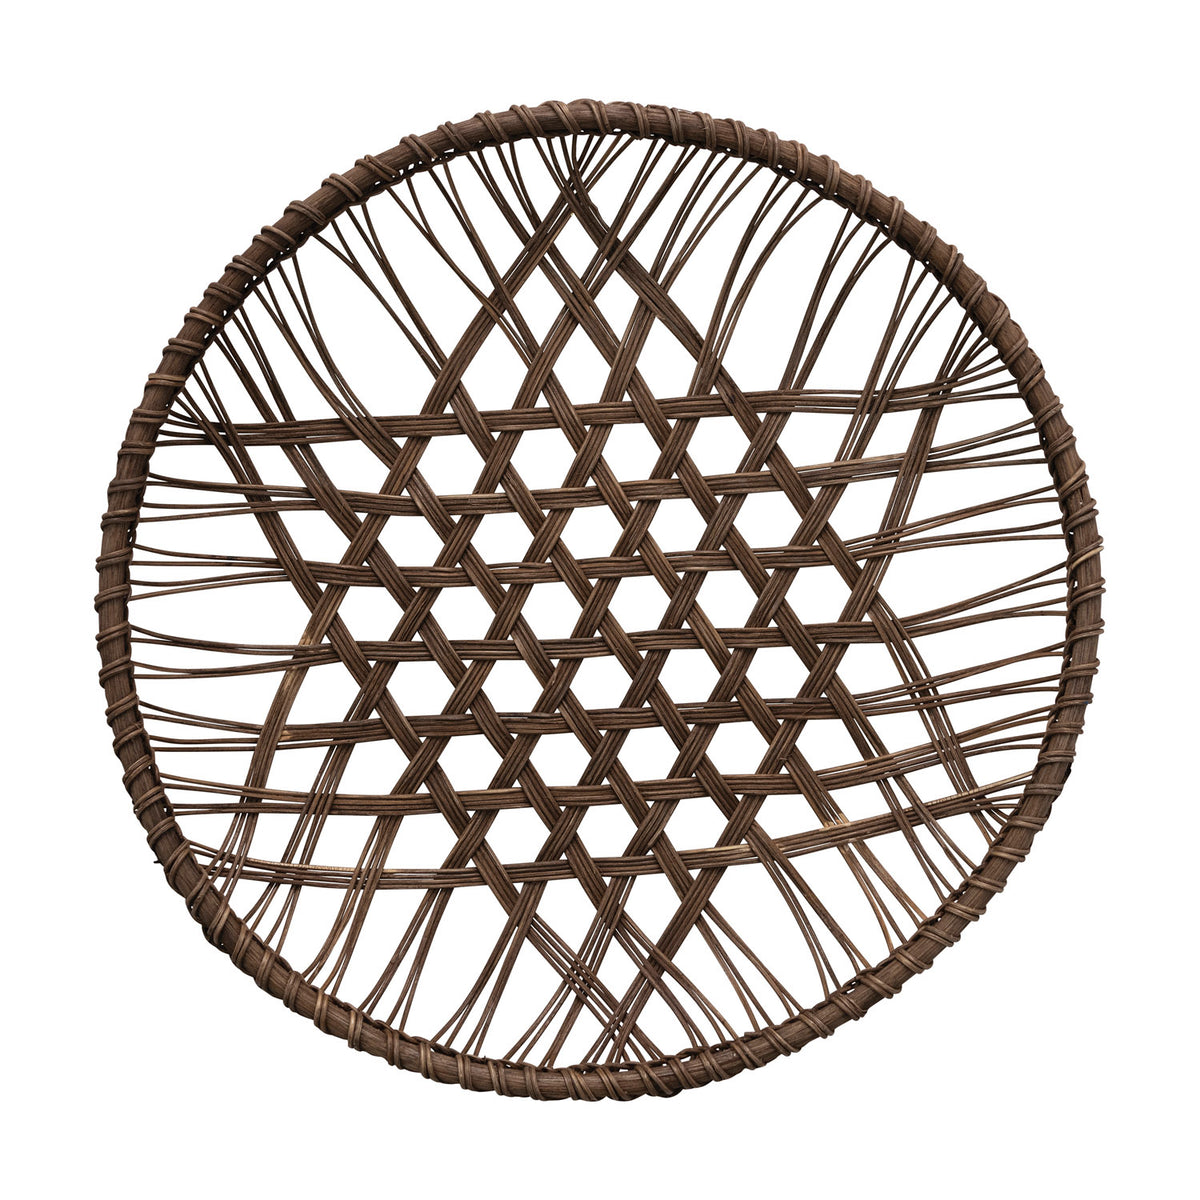 Hard-Woven Rattan Open Weave Basket